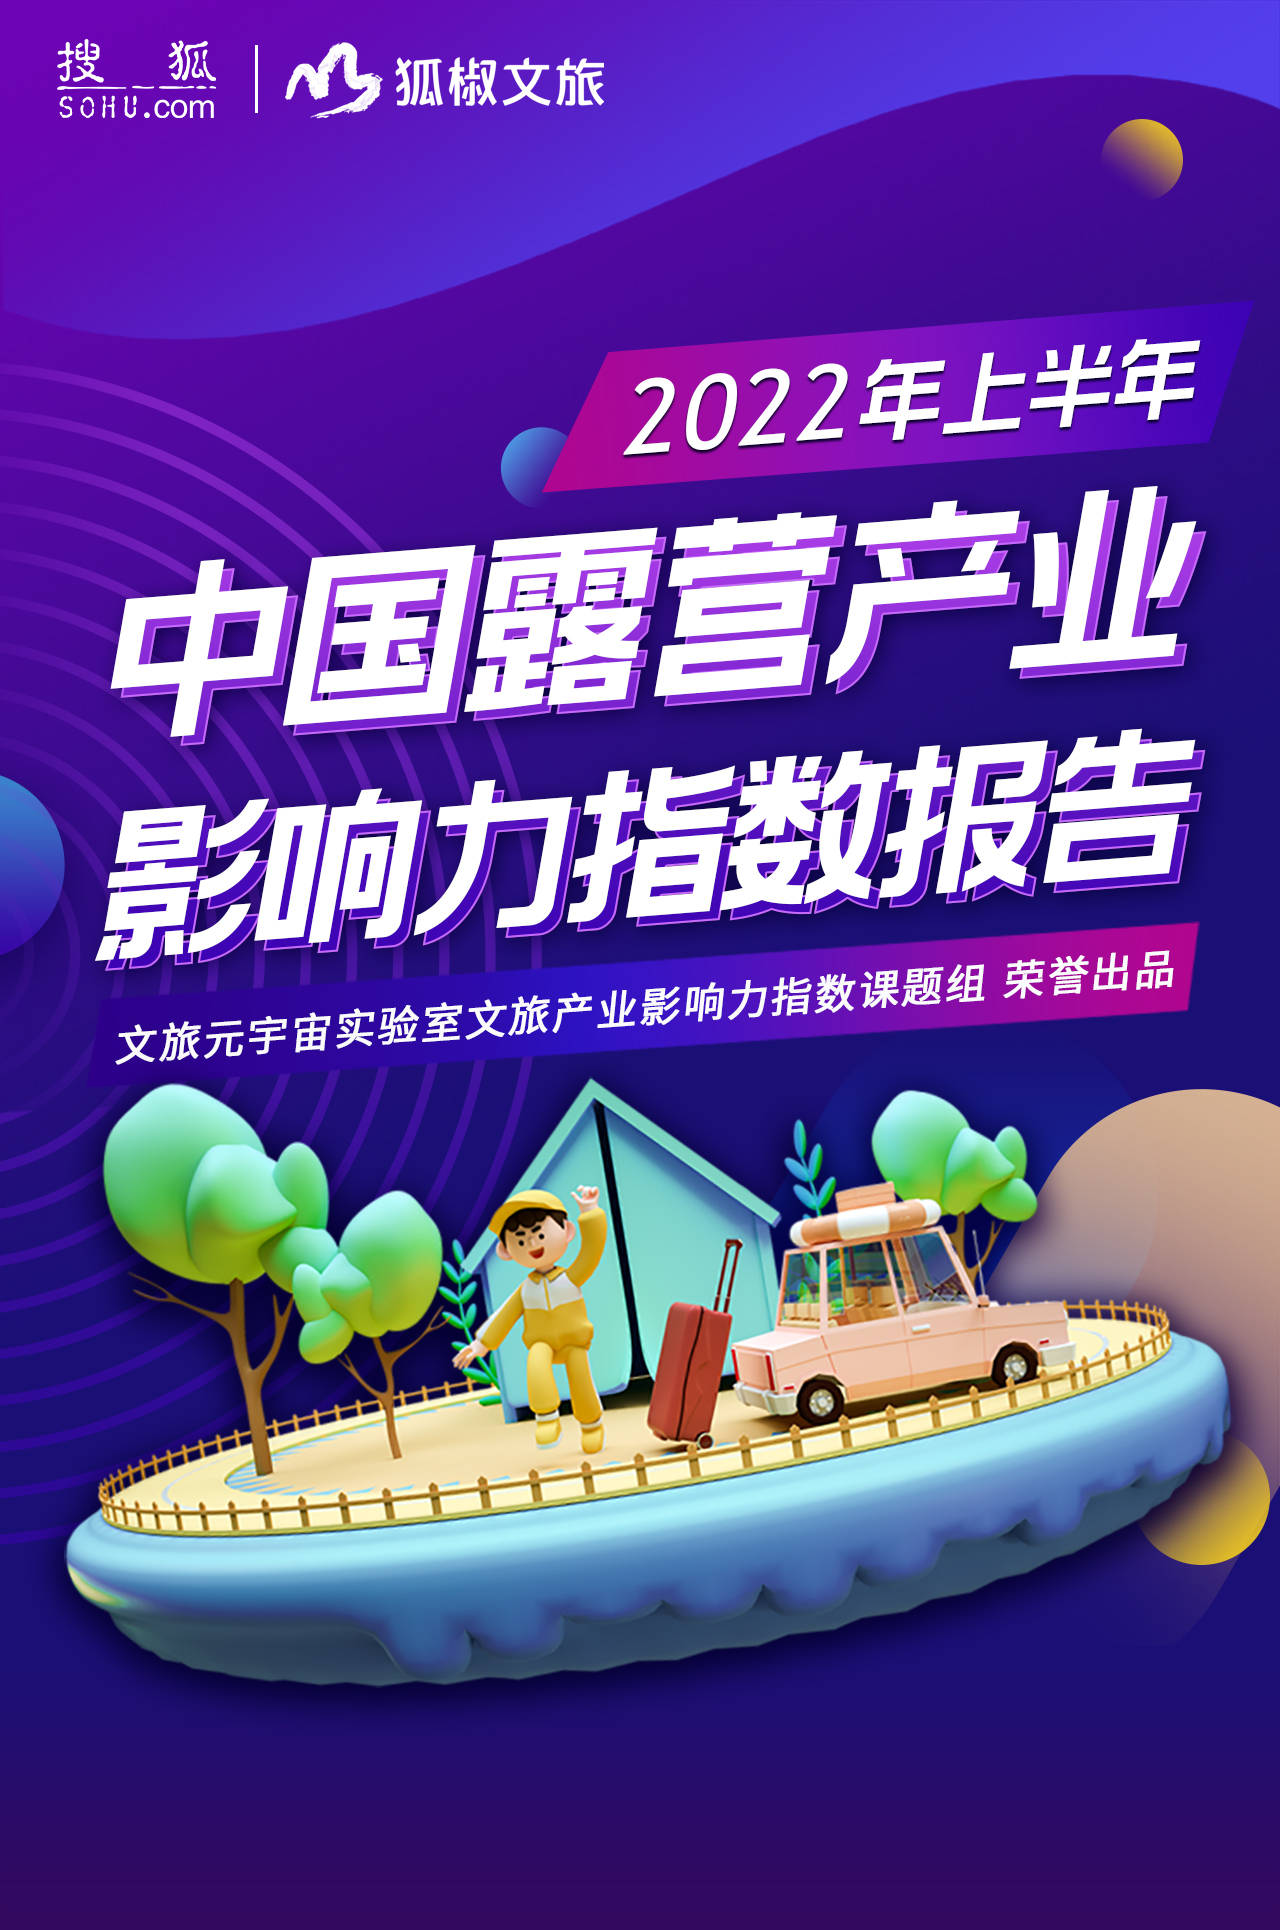 2022年上半年中国露营产业影响力指数报告发布